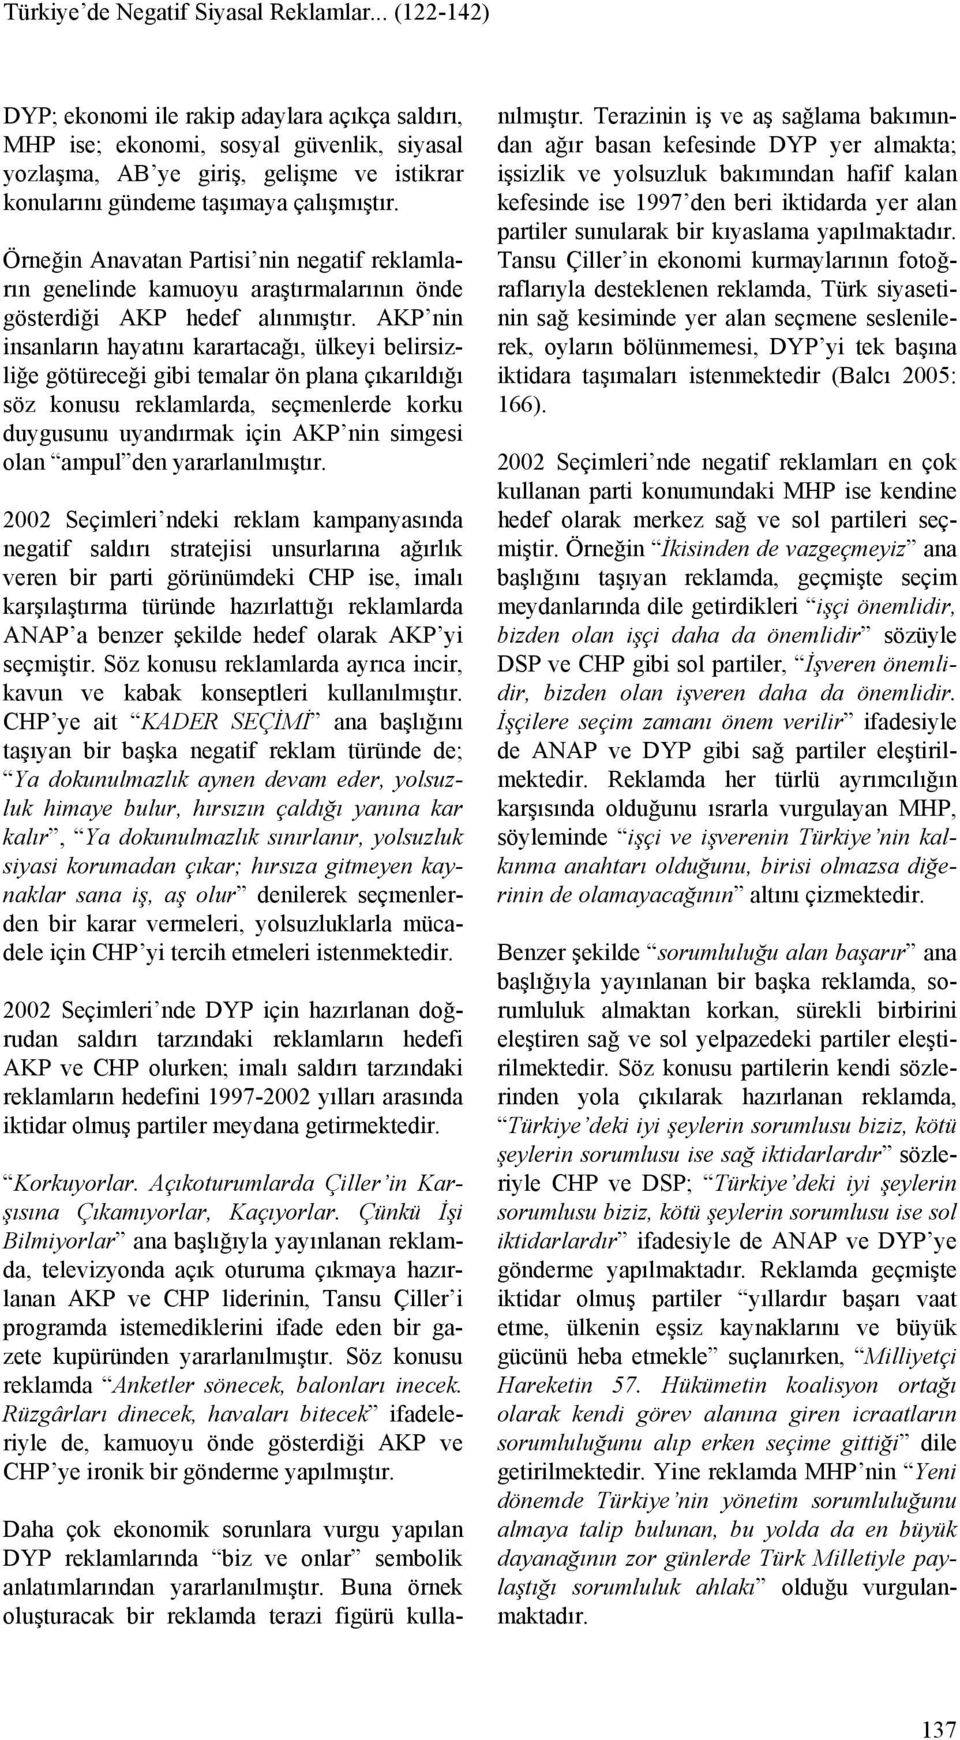 Örneğin Anavatan Partisi nin negatif reklamların genelinde kamuoyu araştırmalarının önde gösterdiği AKP hedef alınmıştır.